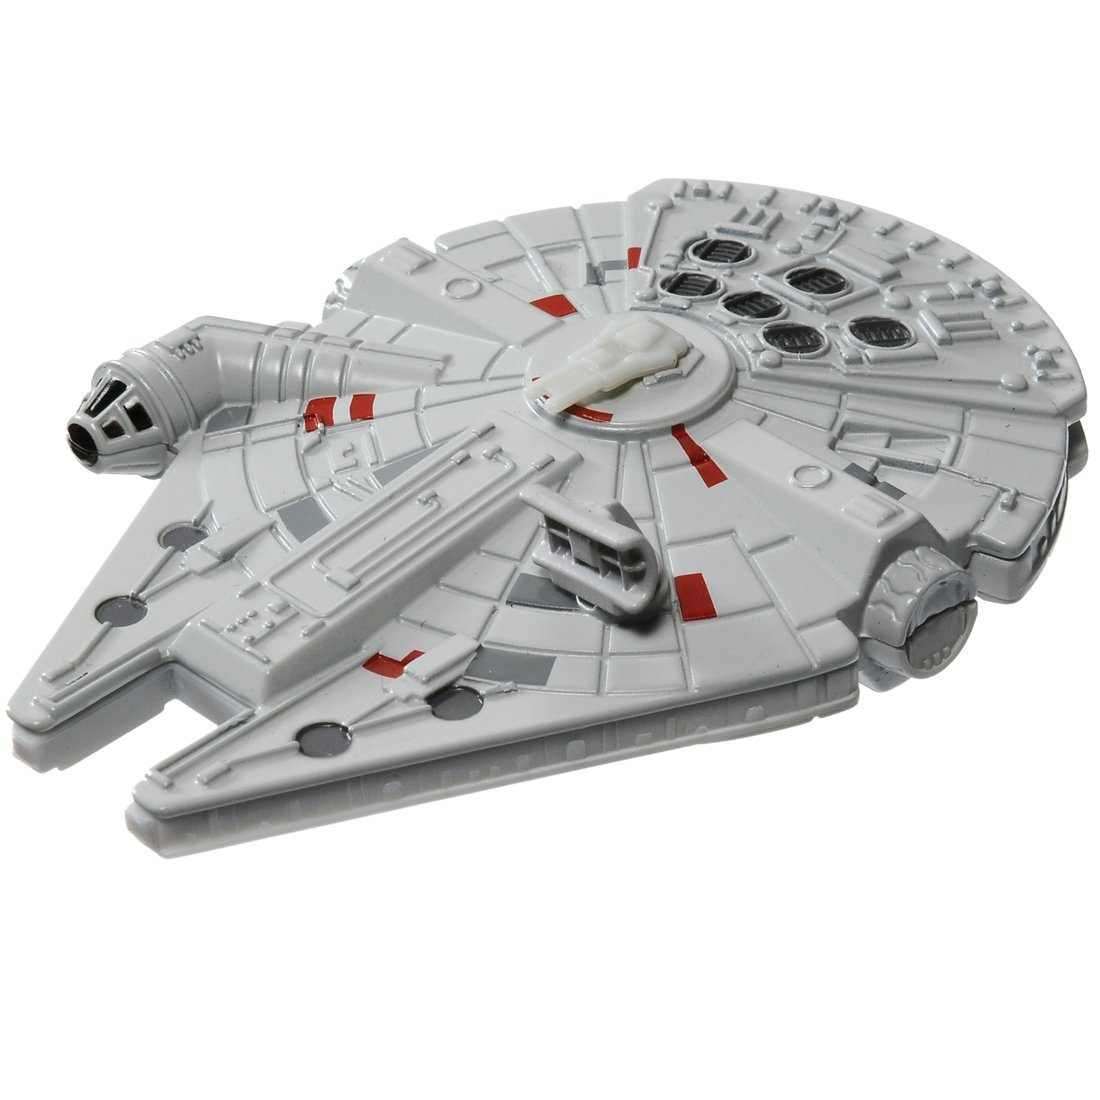 LEGO Star Wars The Rise of Skywalker Millennium Falcon 75257 Bộ xây dựng mô  hình tàu sao và búp bê 1351 miếng  Lazadavn